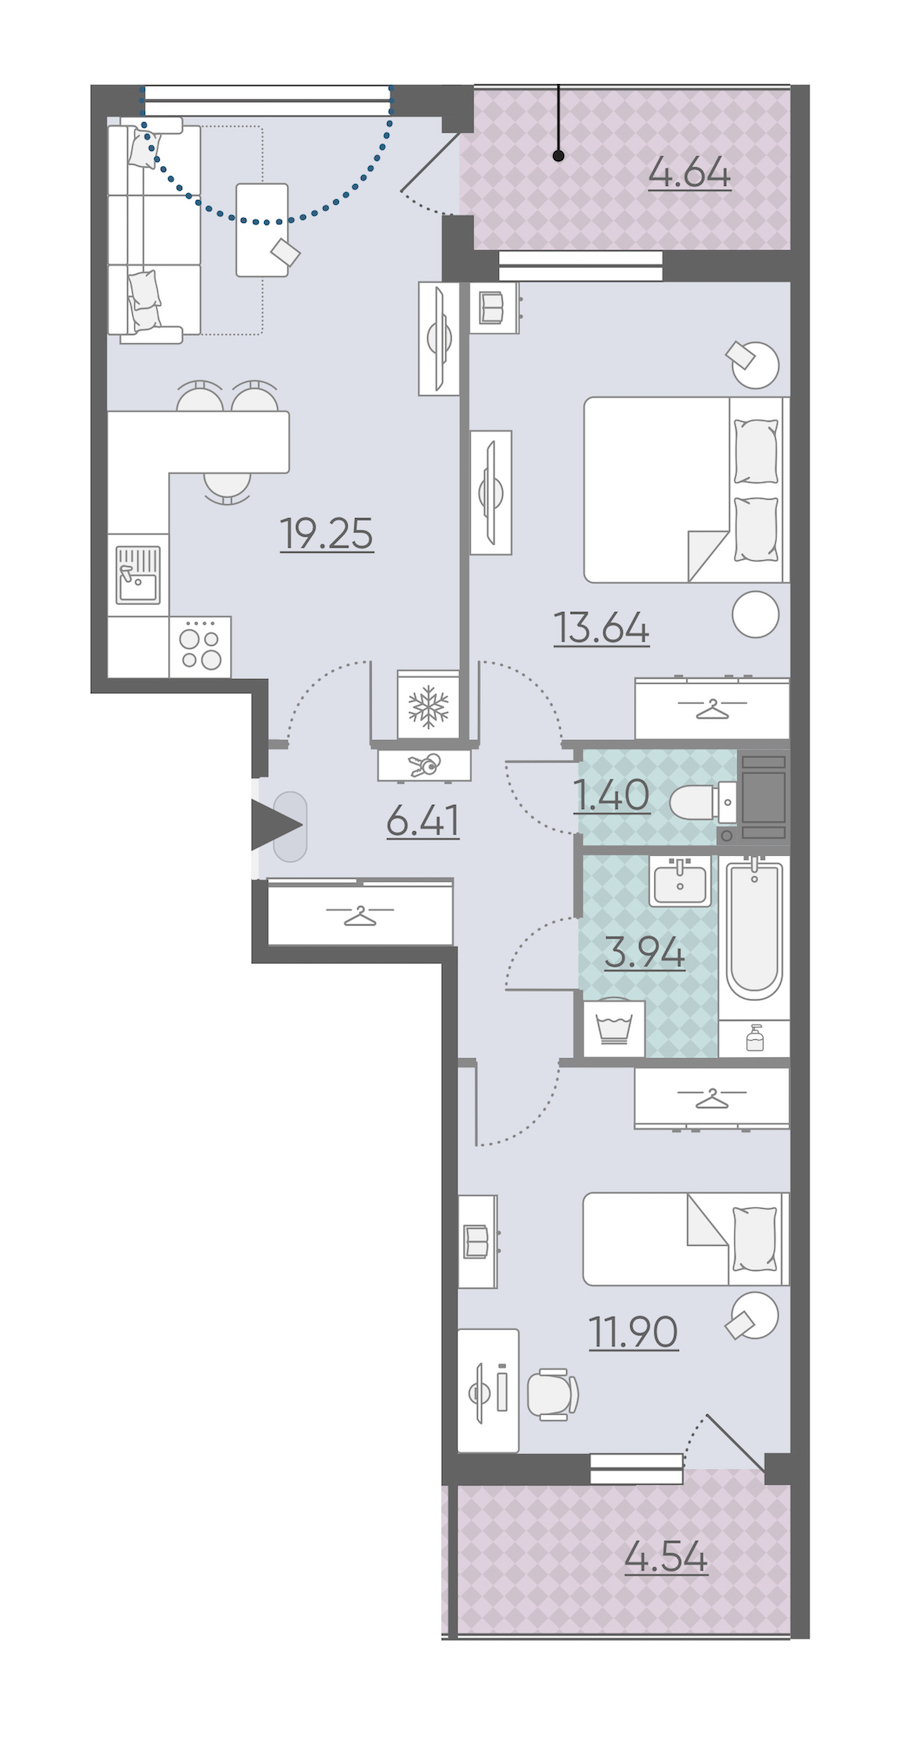 Трехкомнатная квартира в : площадь 61.13 м2 , этаж: 5 – купить в Санкт-Петербурге